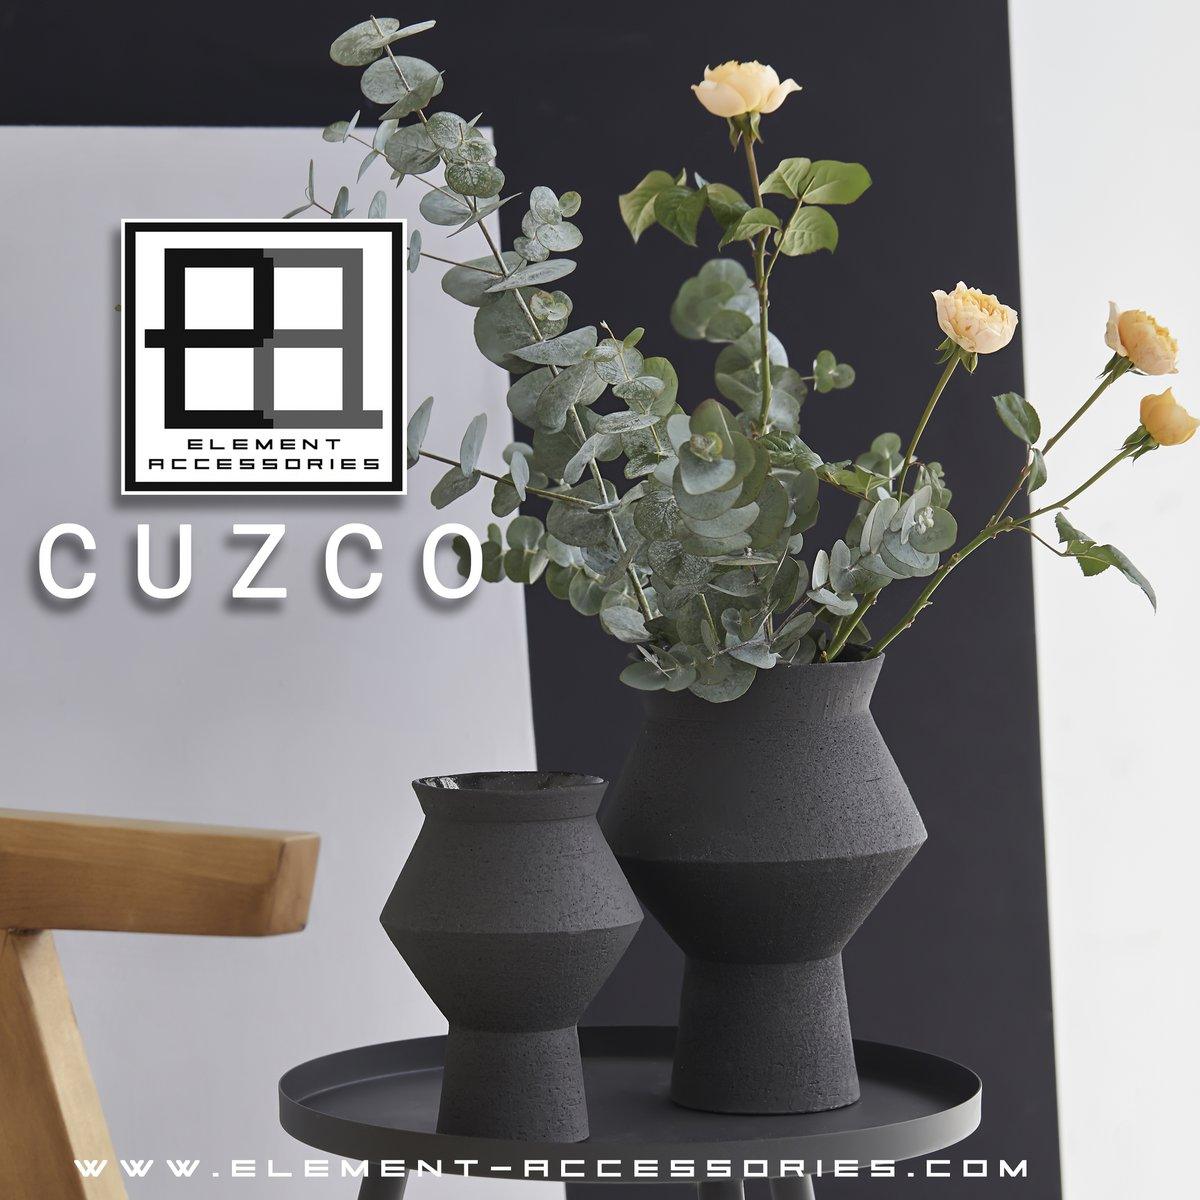 Edel eckige Blumenvase aus Keramik, Cuzco Matt Grau/Schwarz - HomeDesign Knaus